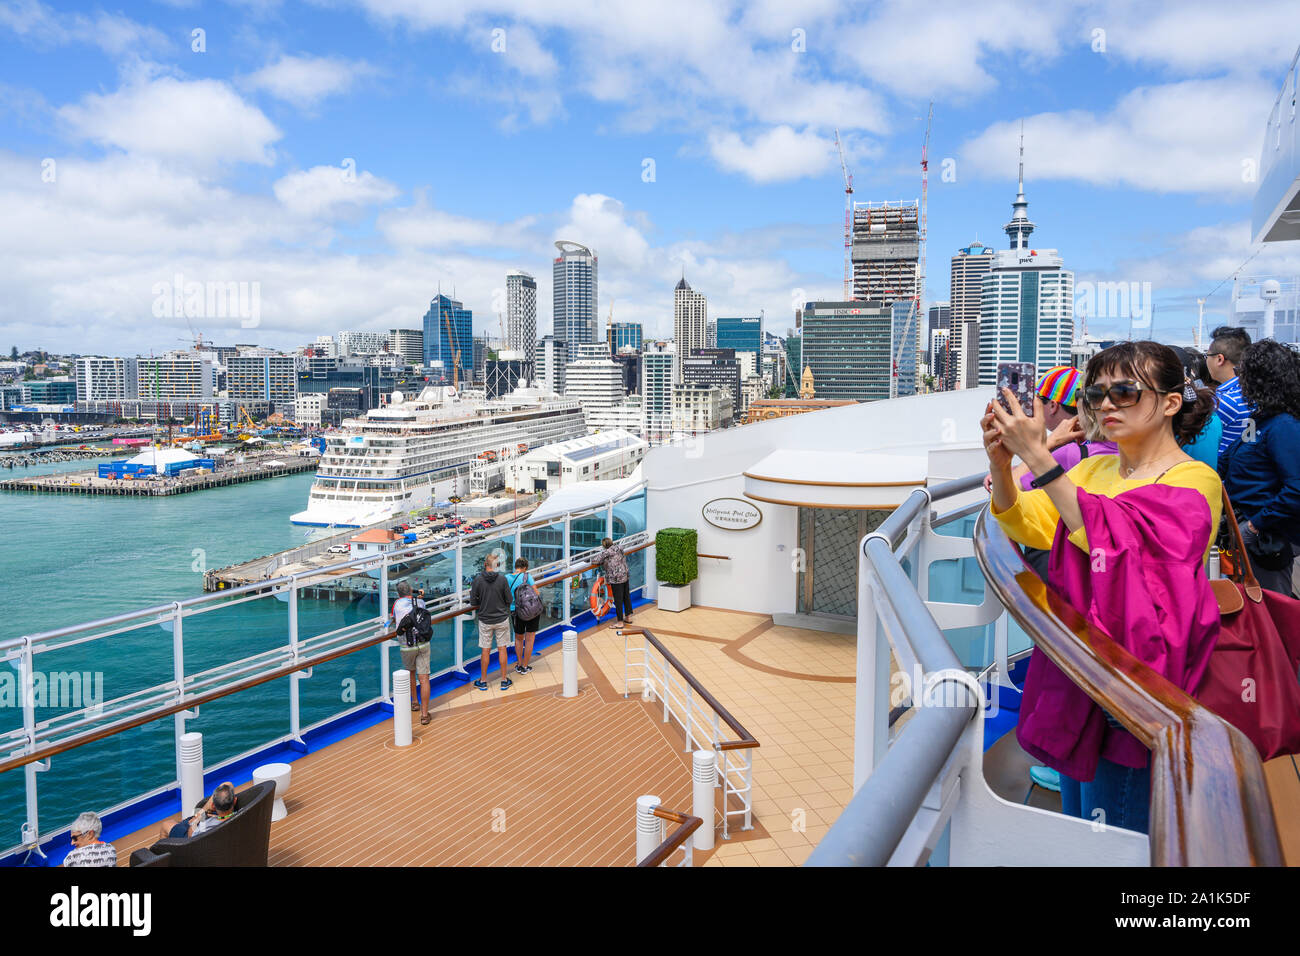 Princess Cruises navire 'Majestic Princess' se prépare à quai à Princes Wharf dans le port d'Auckland, en Nouvelle-Zélande. Banque D'Images